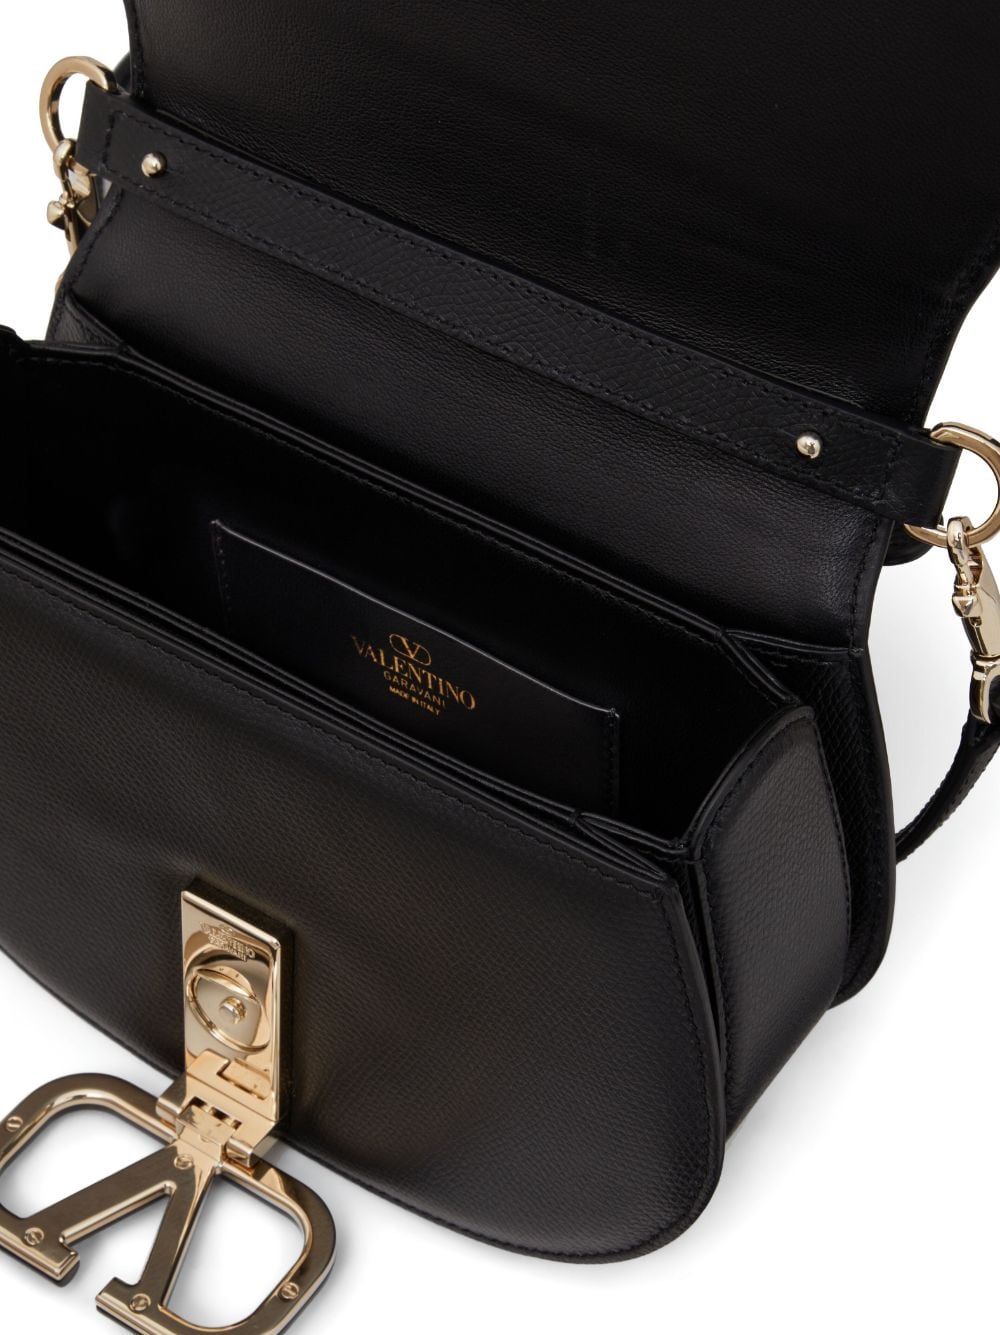 Shop Valentino Vsling Leather Shoulder Bag In Black